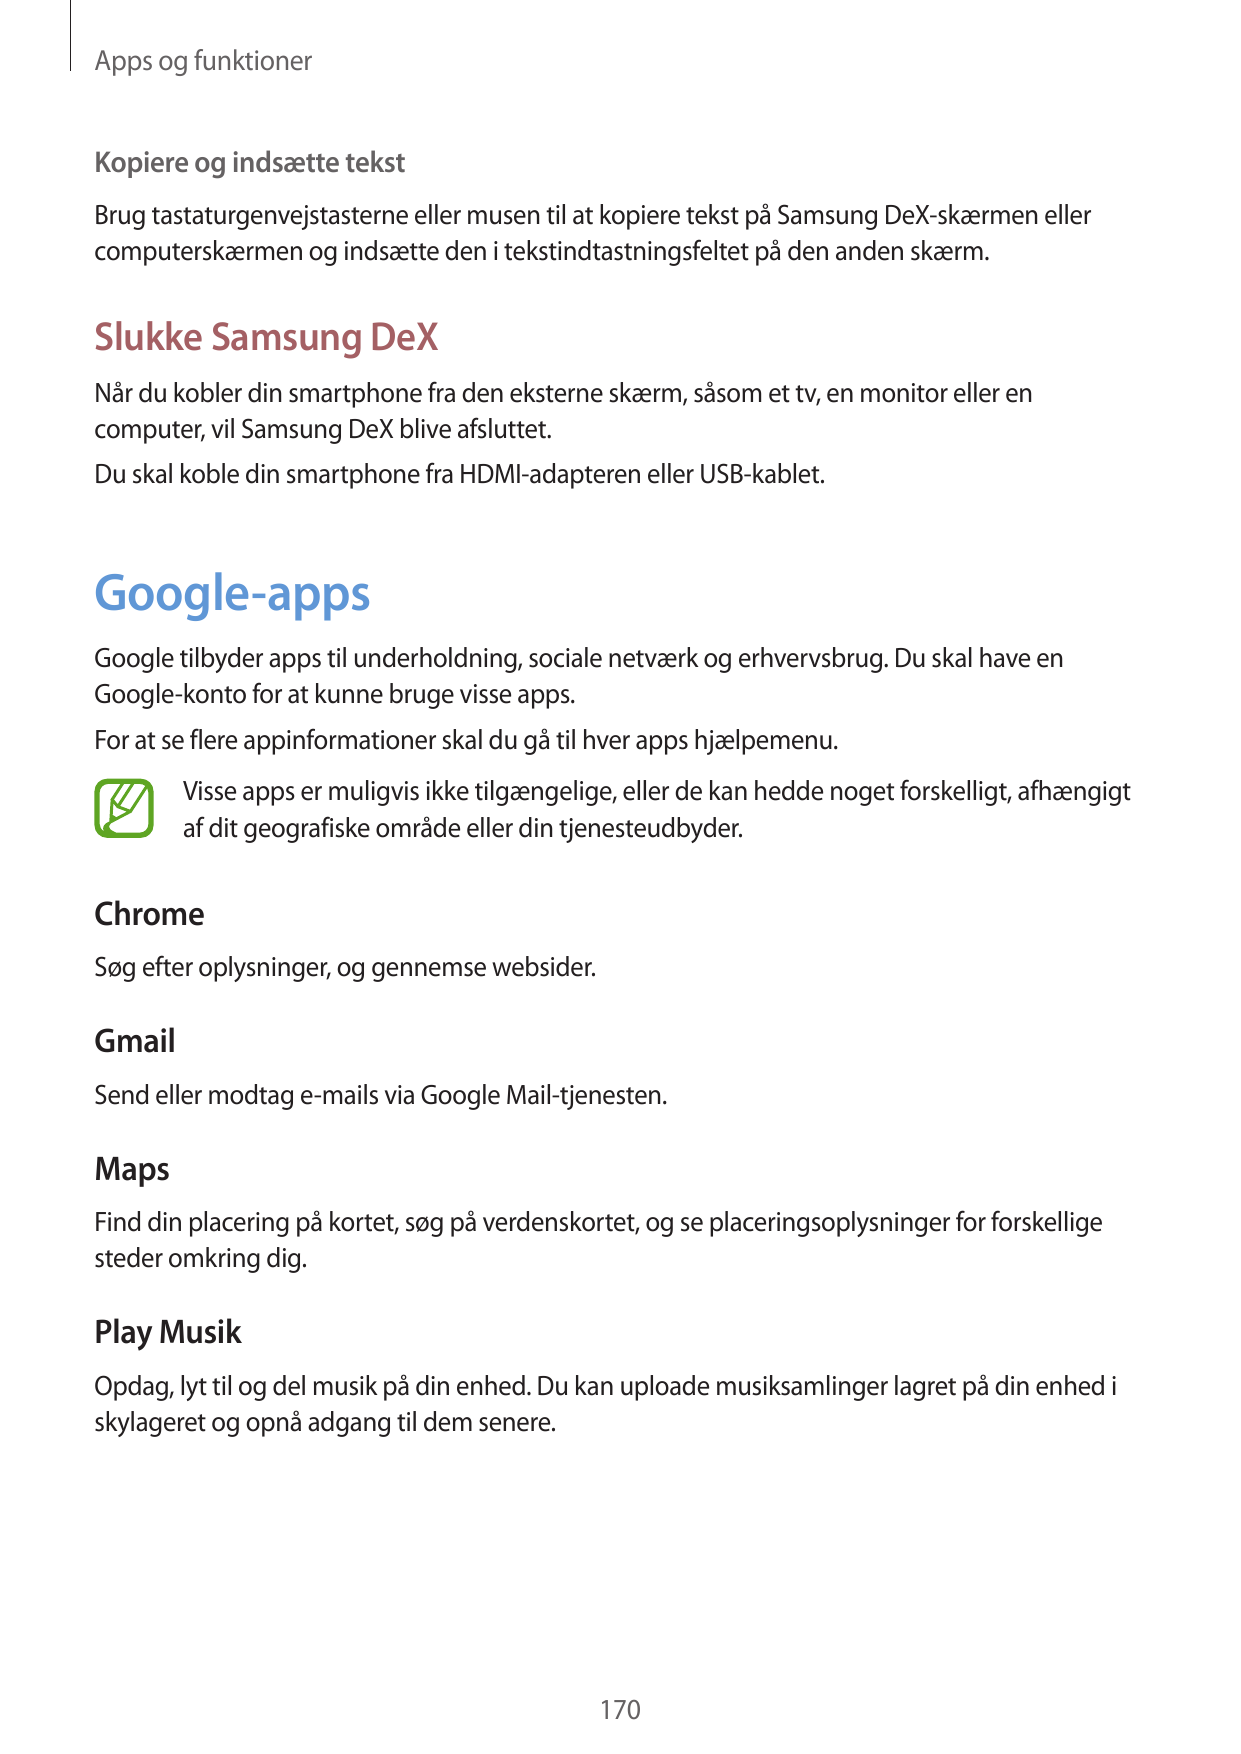 Apps og funktionerKopiere og indsætte tekstBrug tastaturgenvejstasterne eller musen til at kopiere tekst på Samsung DeX-skærmen 